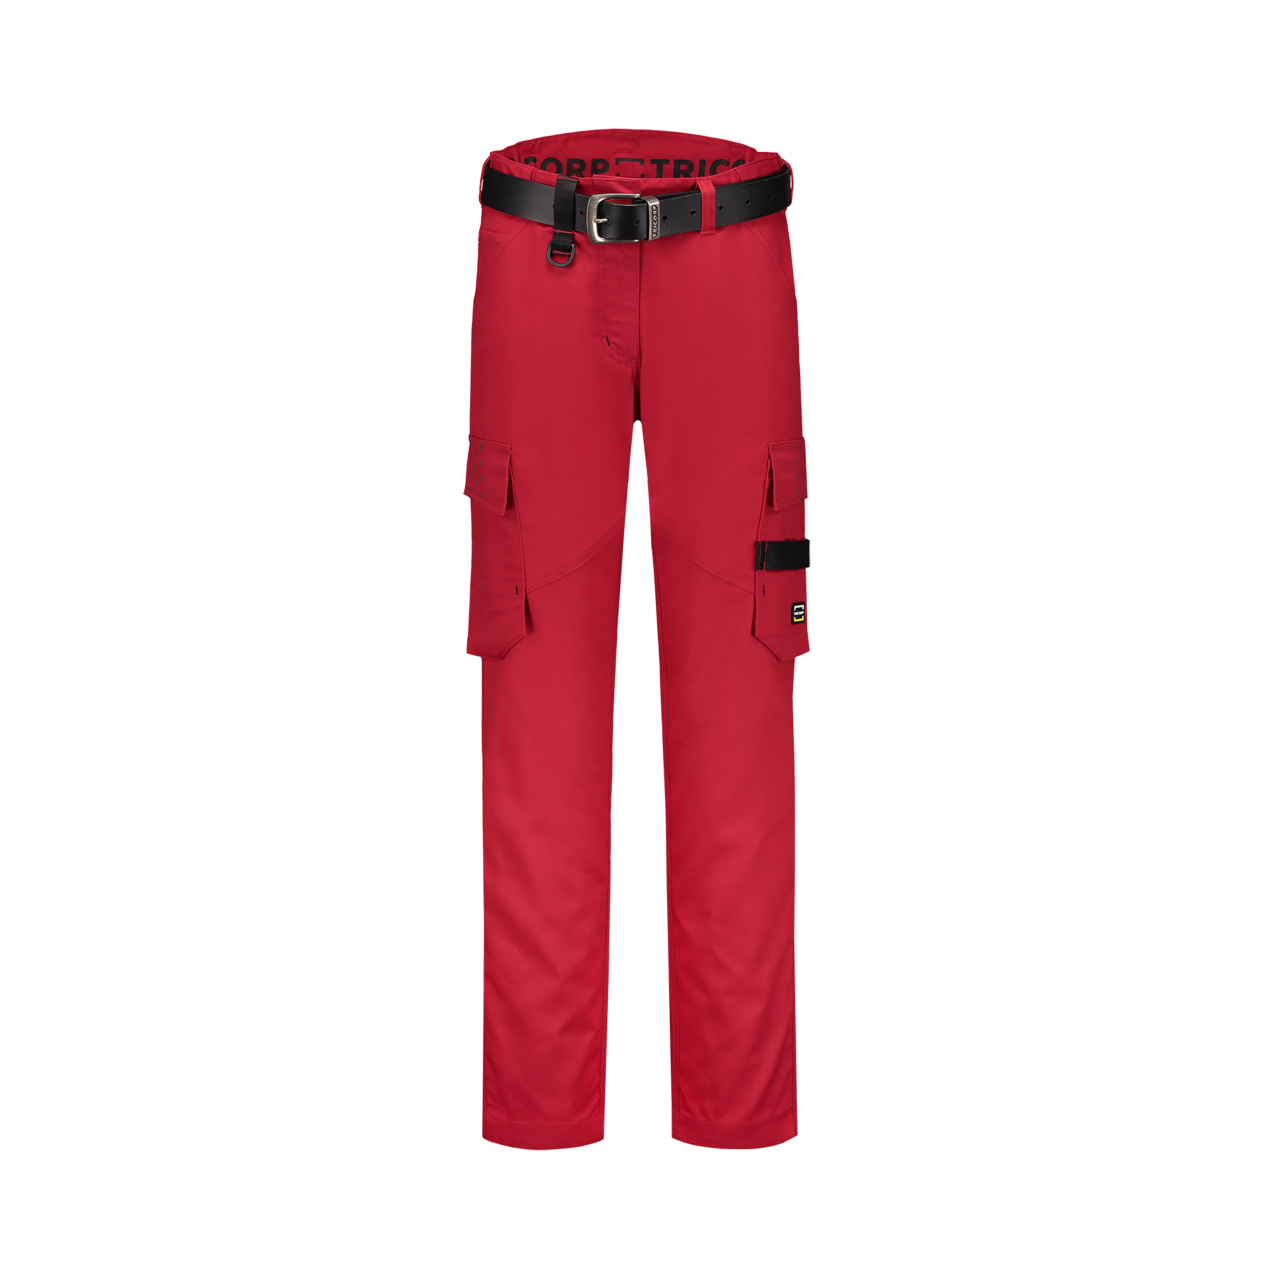 Pracovní kalhoty dámské Tricorp Work Pants Twill Woman - červené, 44